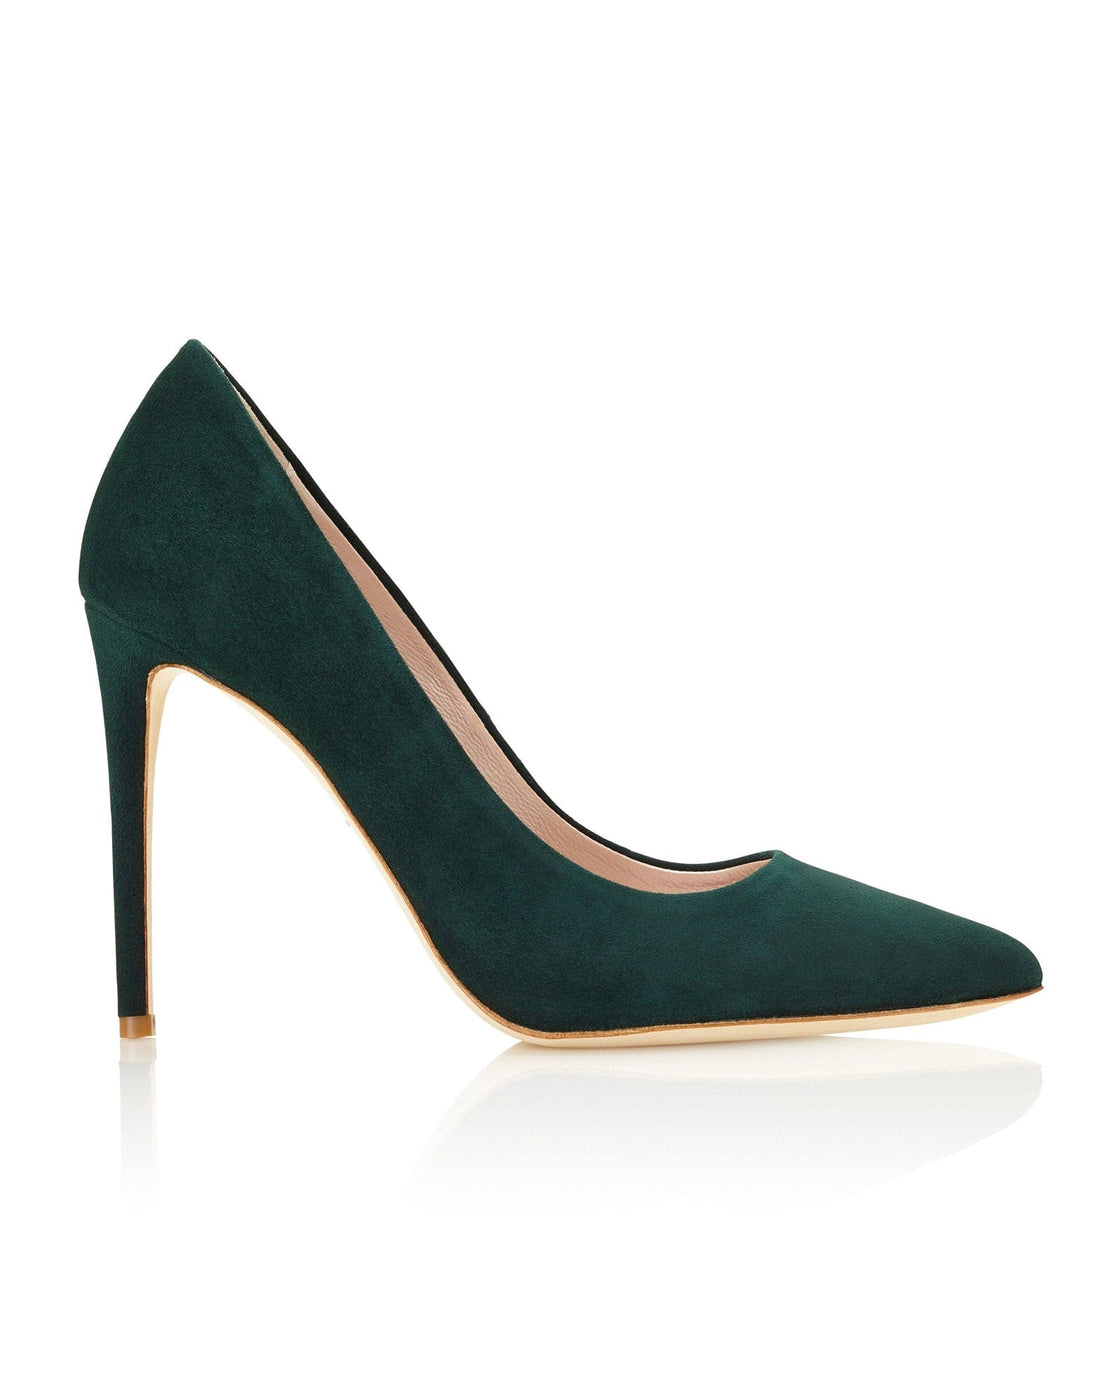 Designer High Heel Shoes | Luxurious High Heels | Emmy London